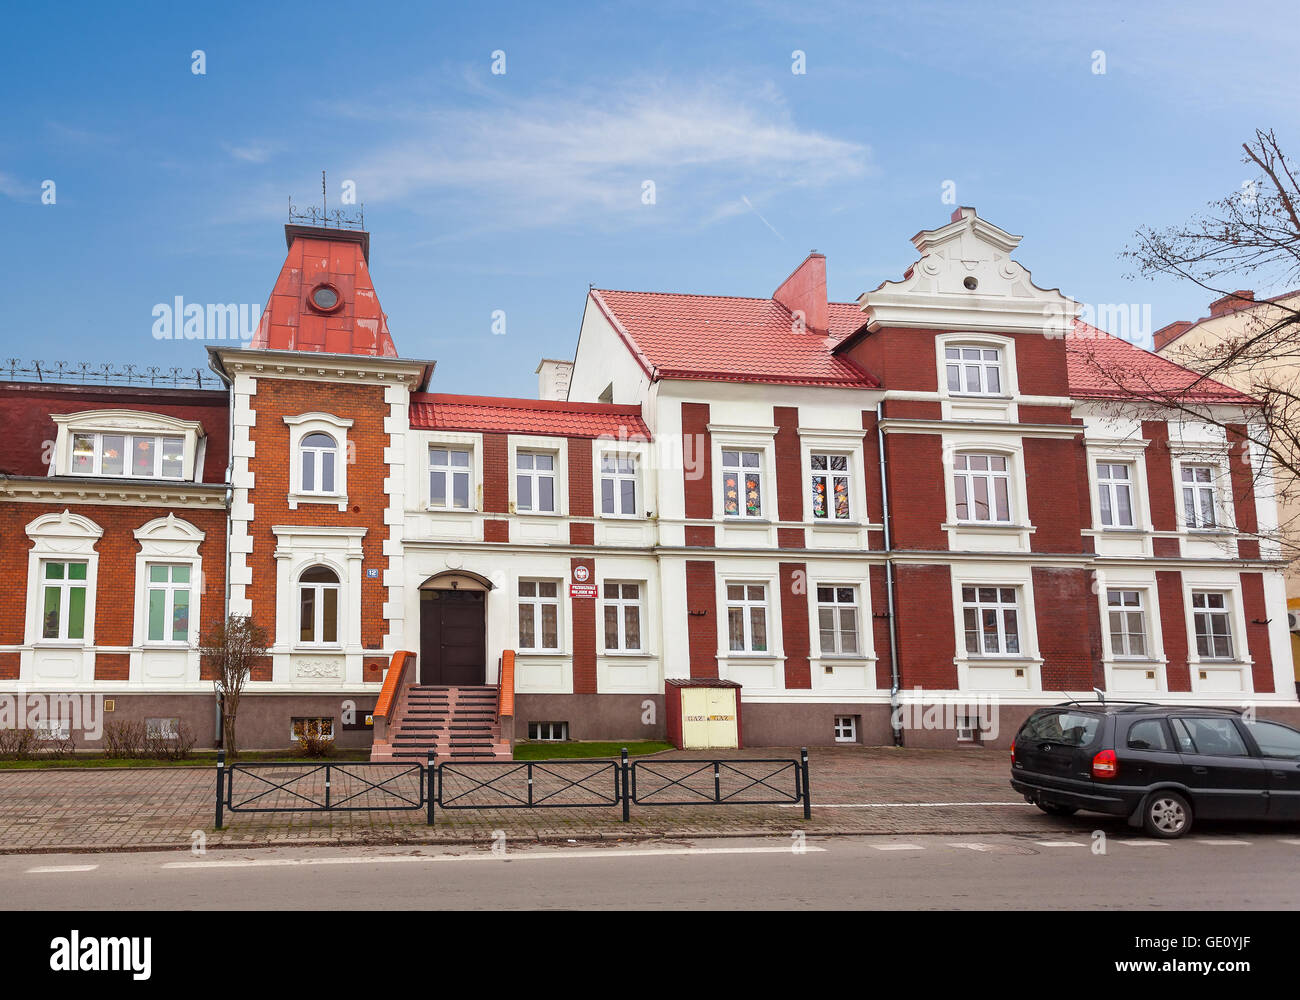 Bialogard, Pologne - 27 novembre 2014 : école maternelle publique n°1 situé dans un immeuble historique à Bialogard. Banque D'Images